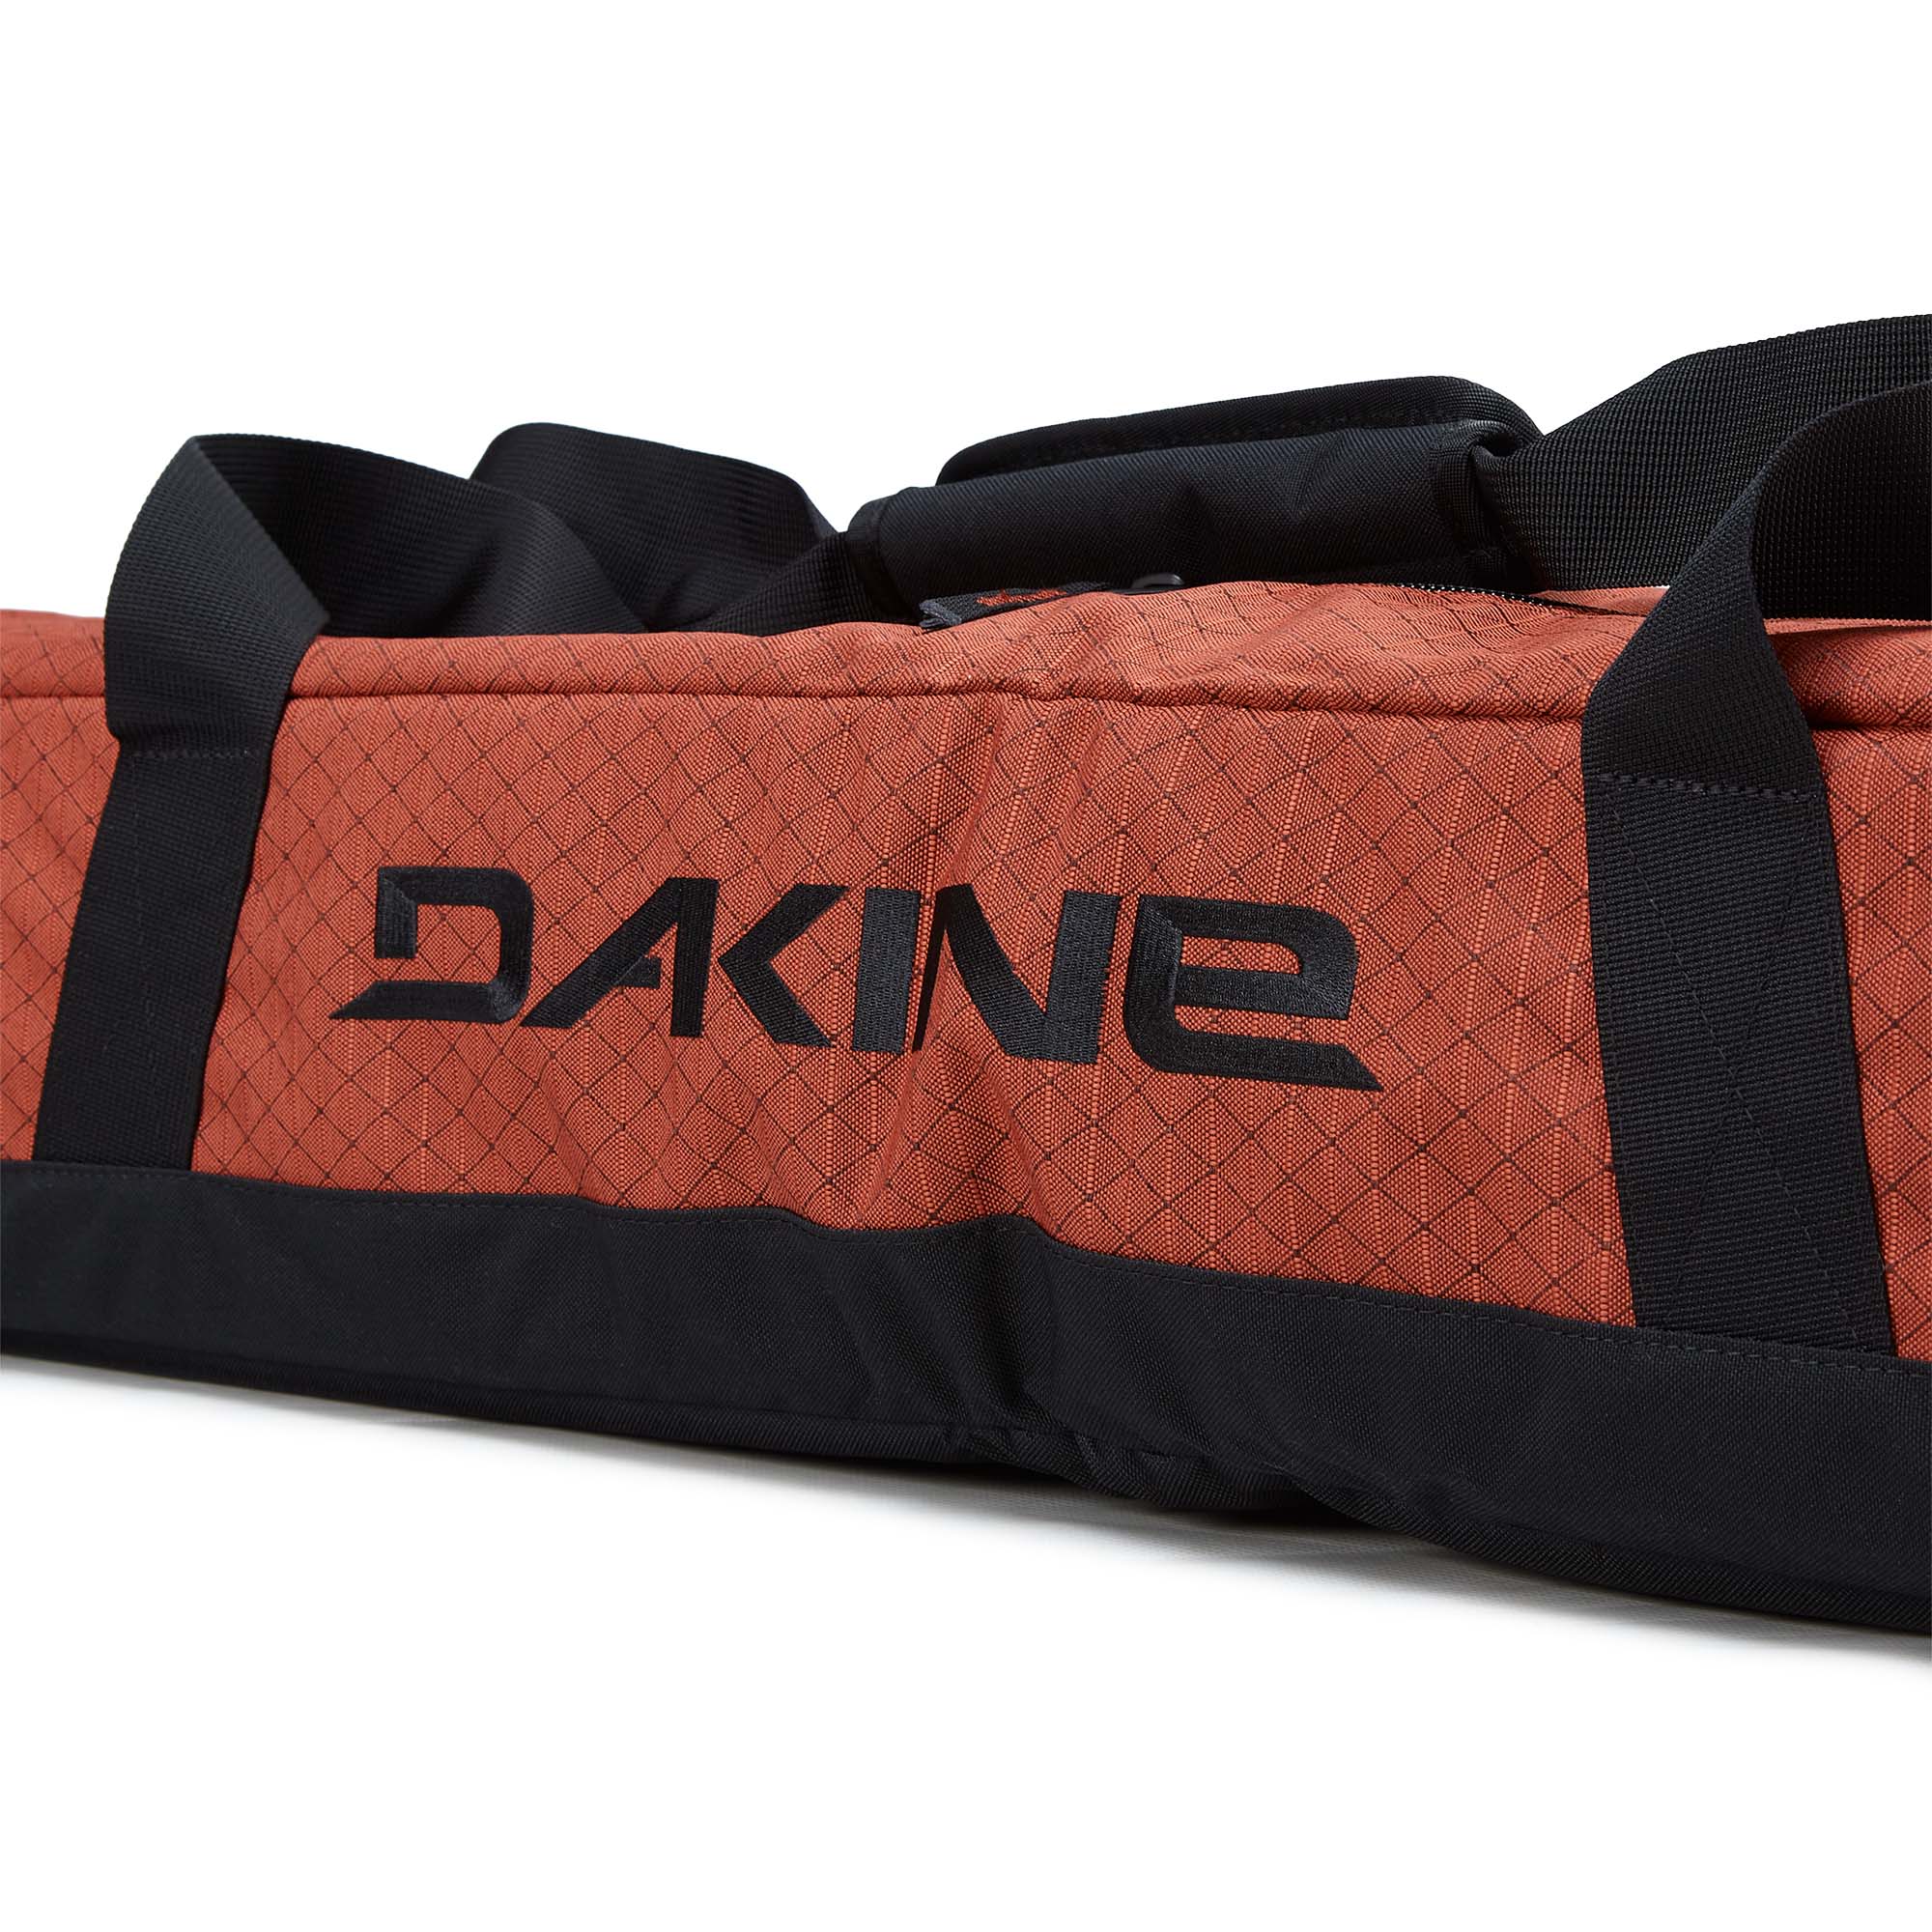 Dakine Padded Ski Sleeve Ski Travel Bag